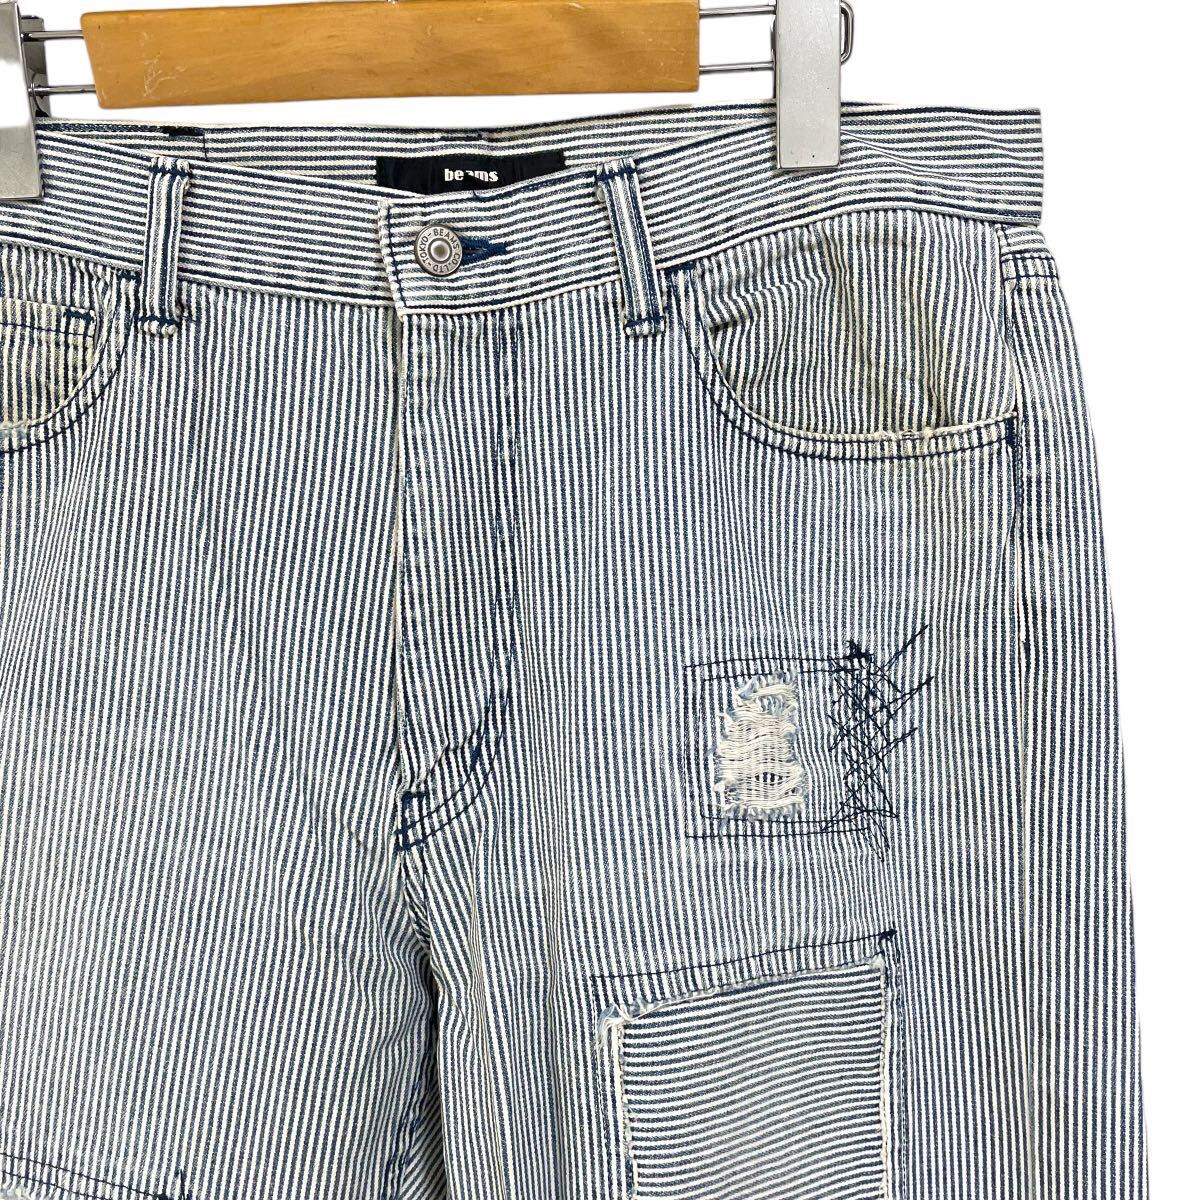 BEAMS Beams распорка Denim брюки Hickory полоса белый голубой повреждение обработка сделано в Японии размер L